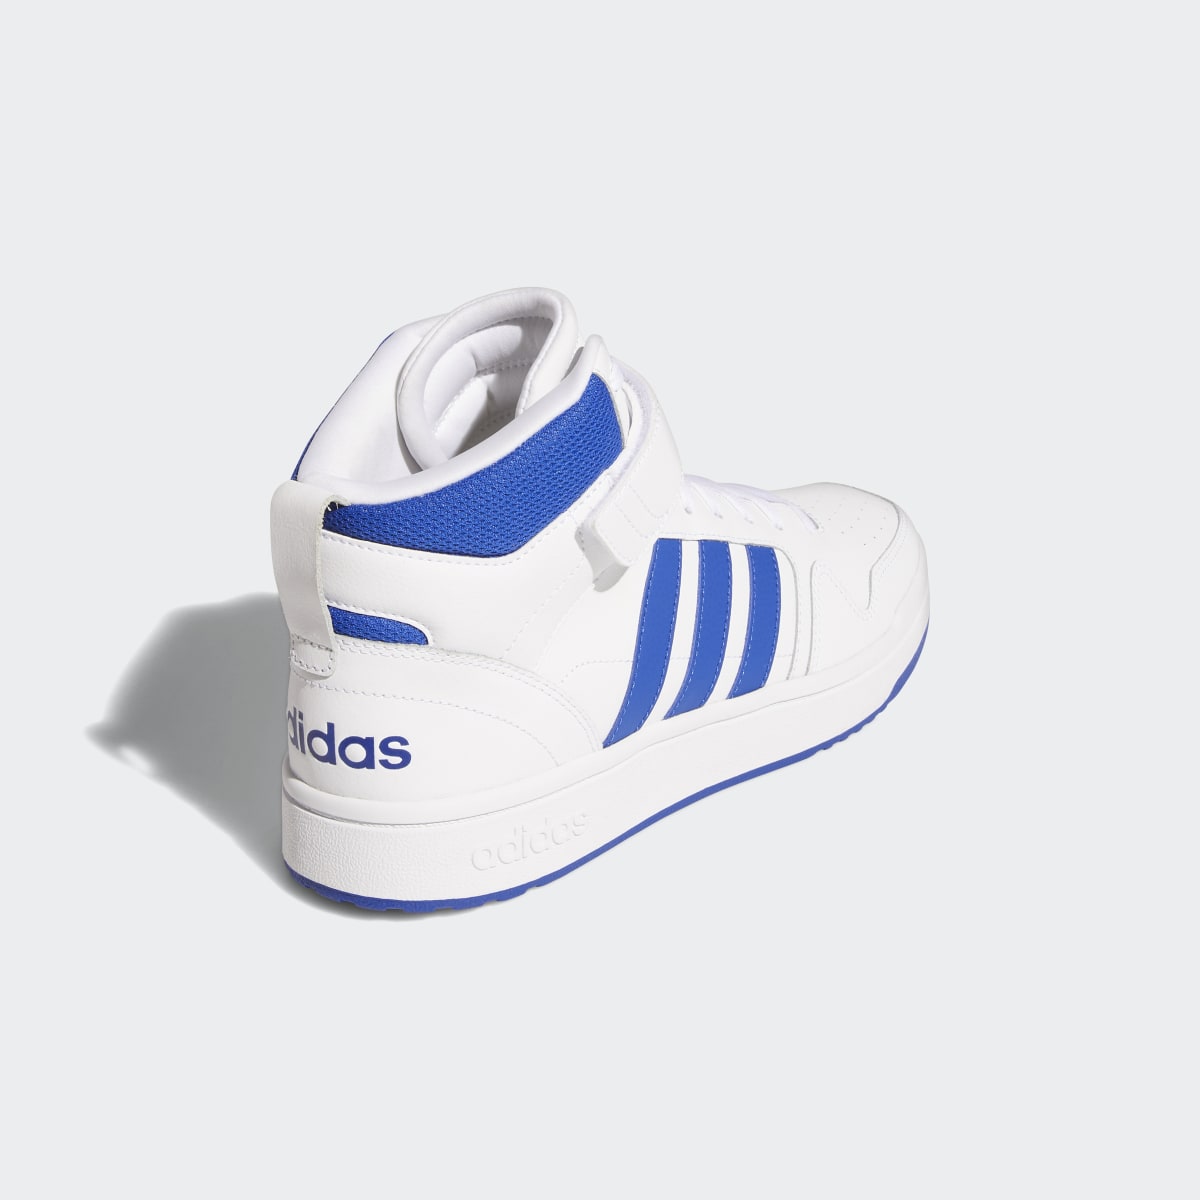 Adidas Postmove Mid Shoes. 6